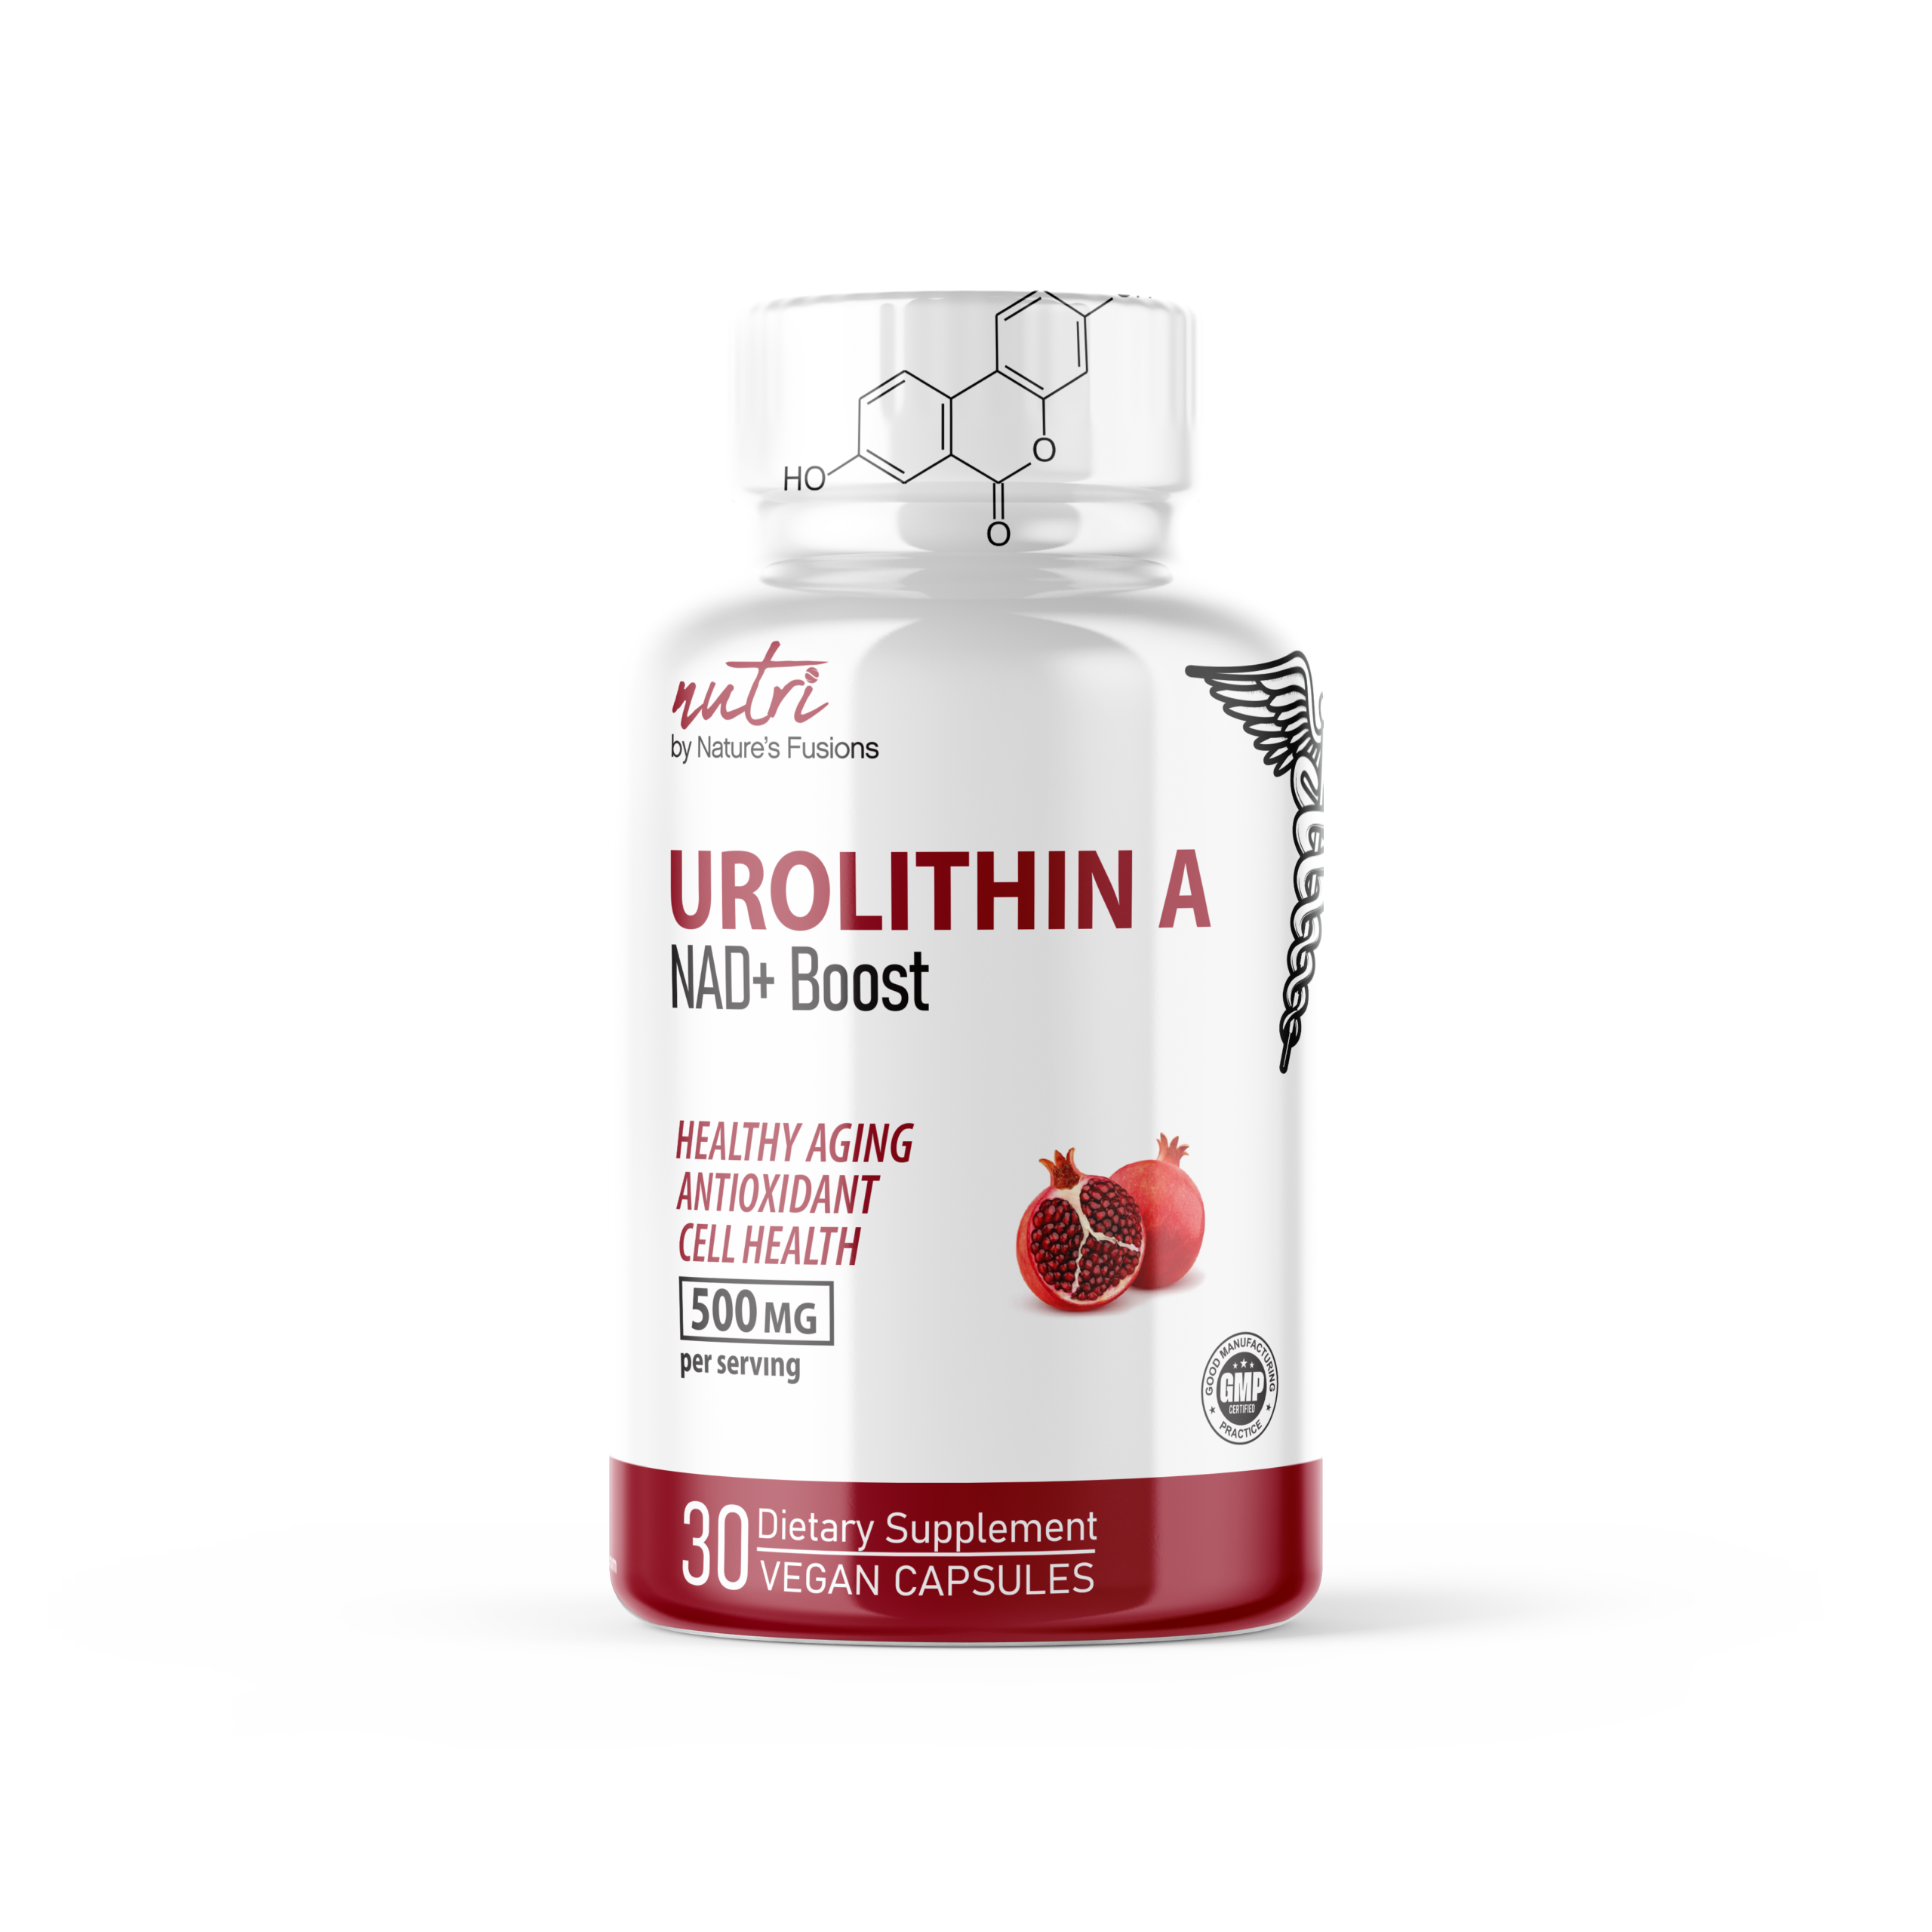 Nutri Urolithin